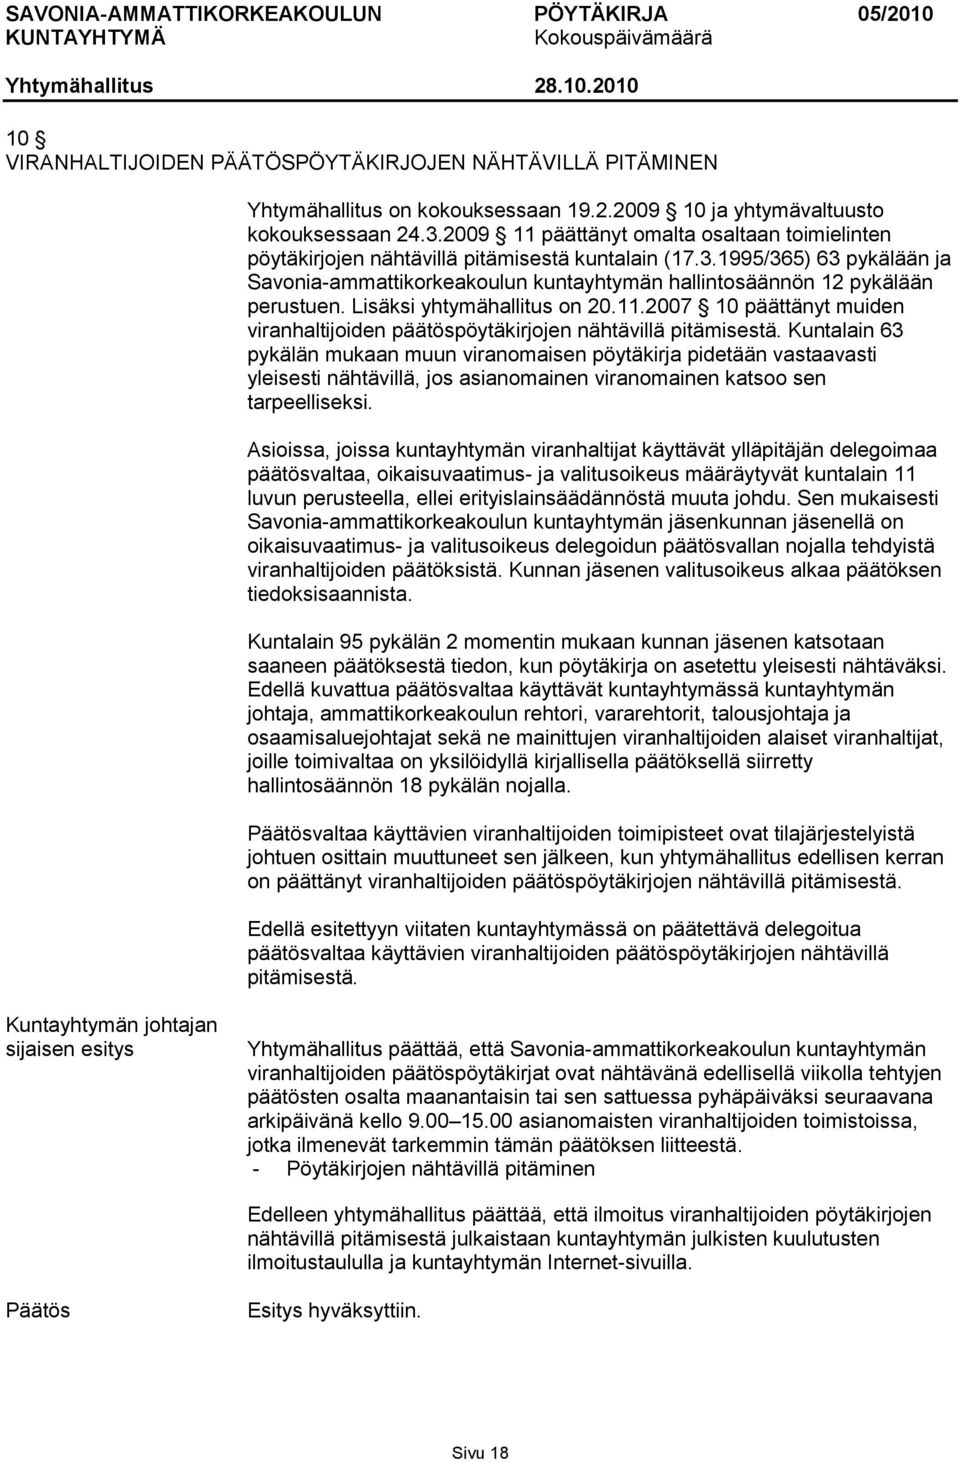 1995/365) 63 pykälään ja Savonia-ammattikorkeakoulun kuntayhtymän hallintosäännön 12 pykälään perustuen. Lisäksi yhtymähallitus on 20.11.